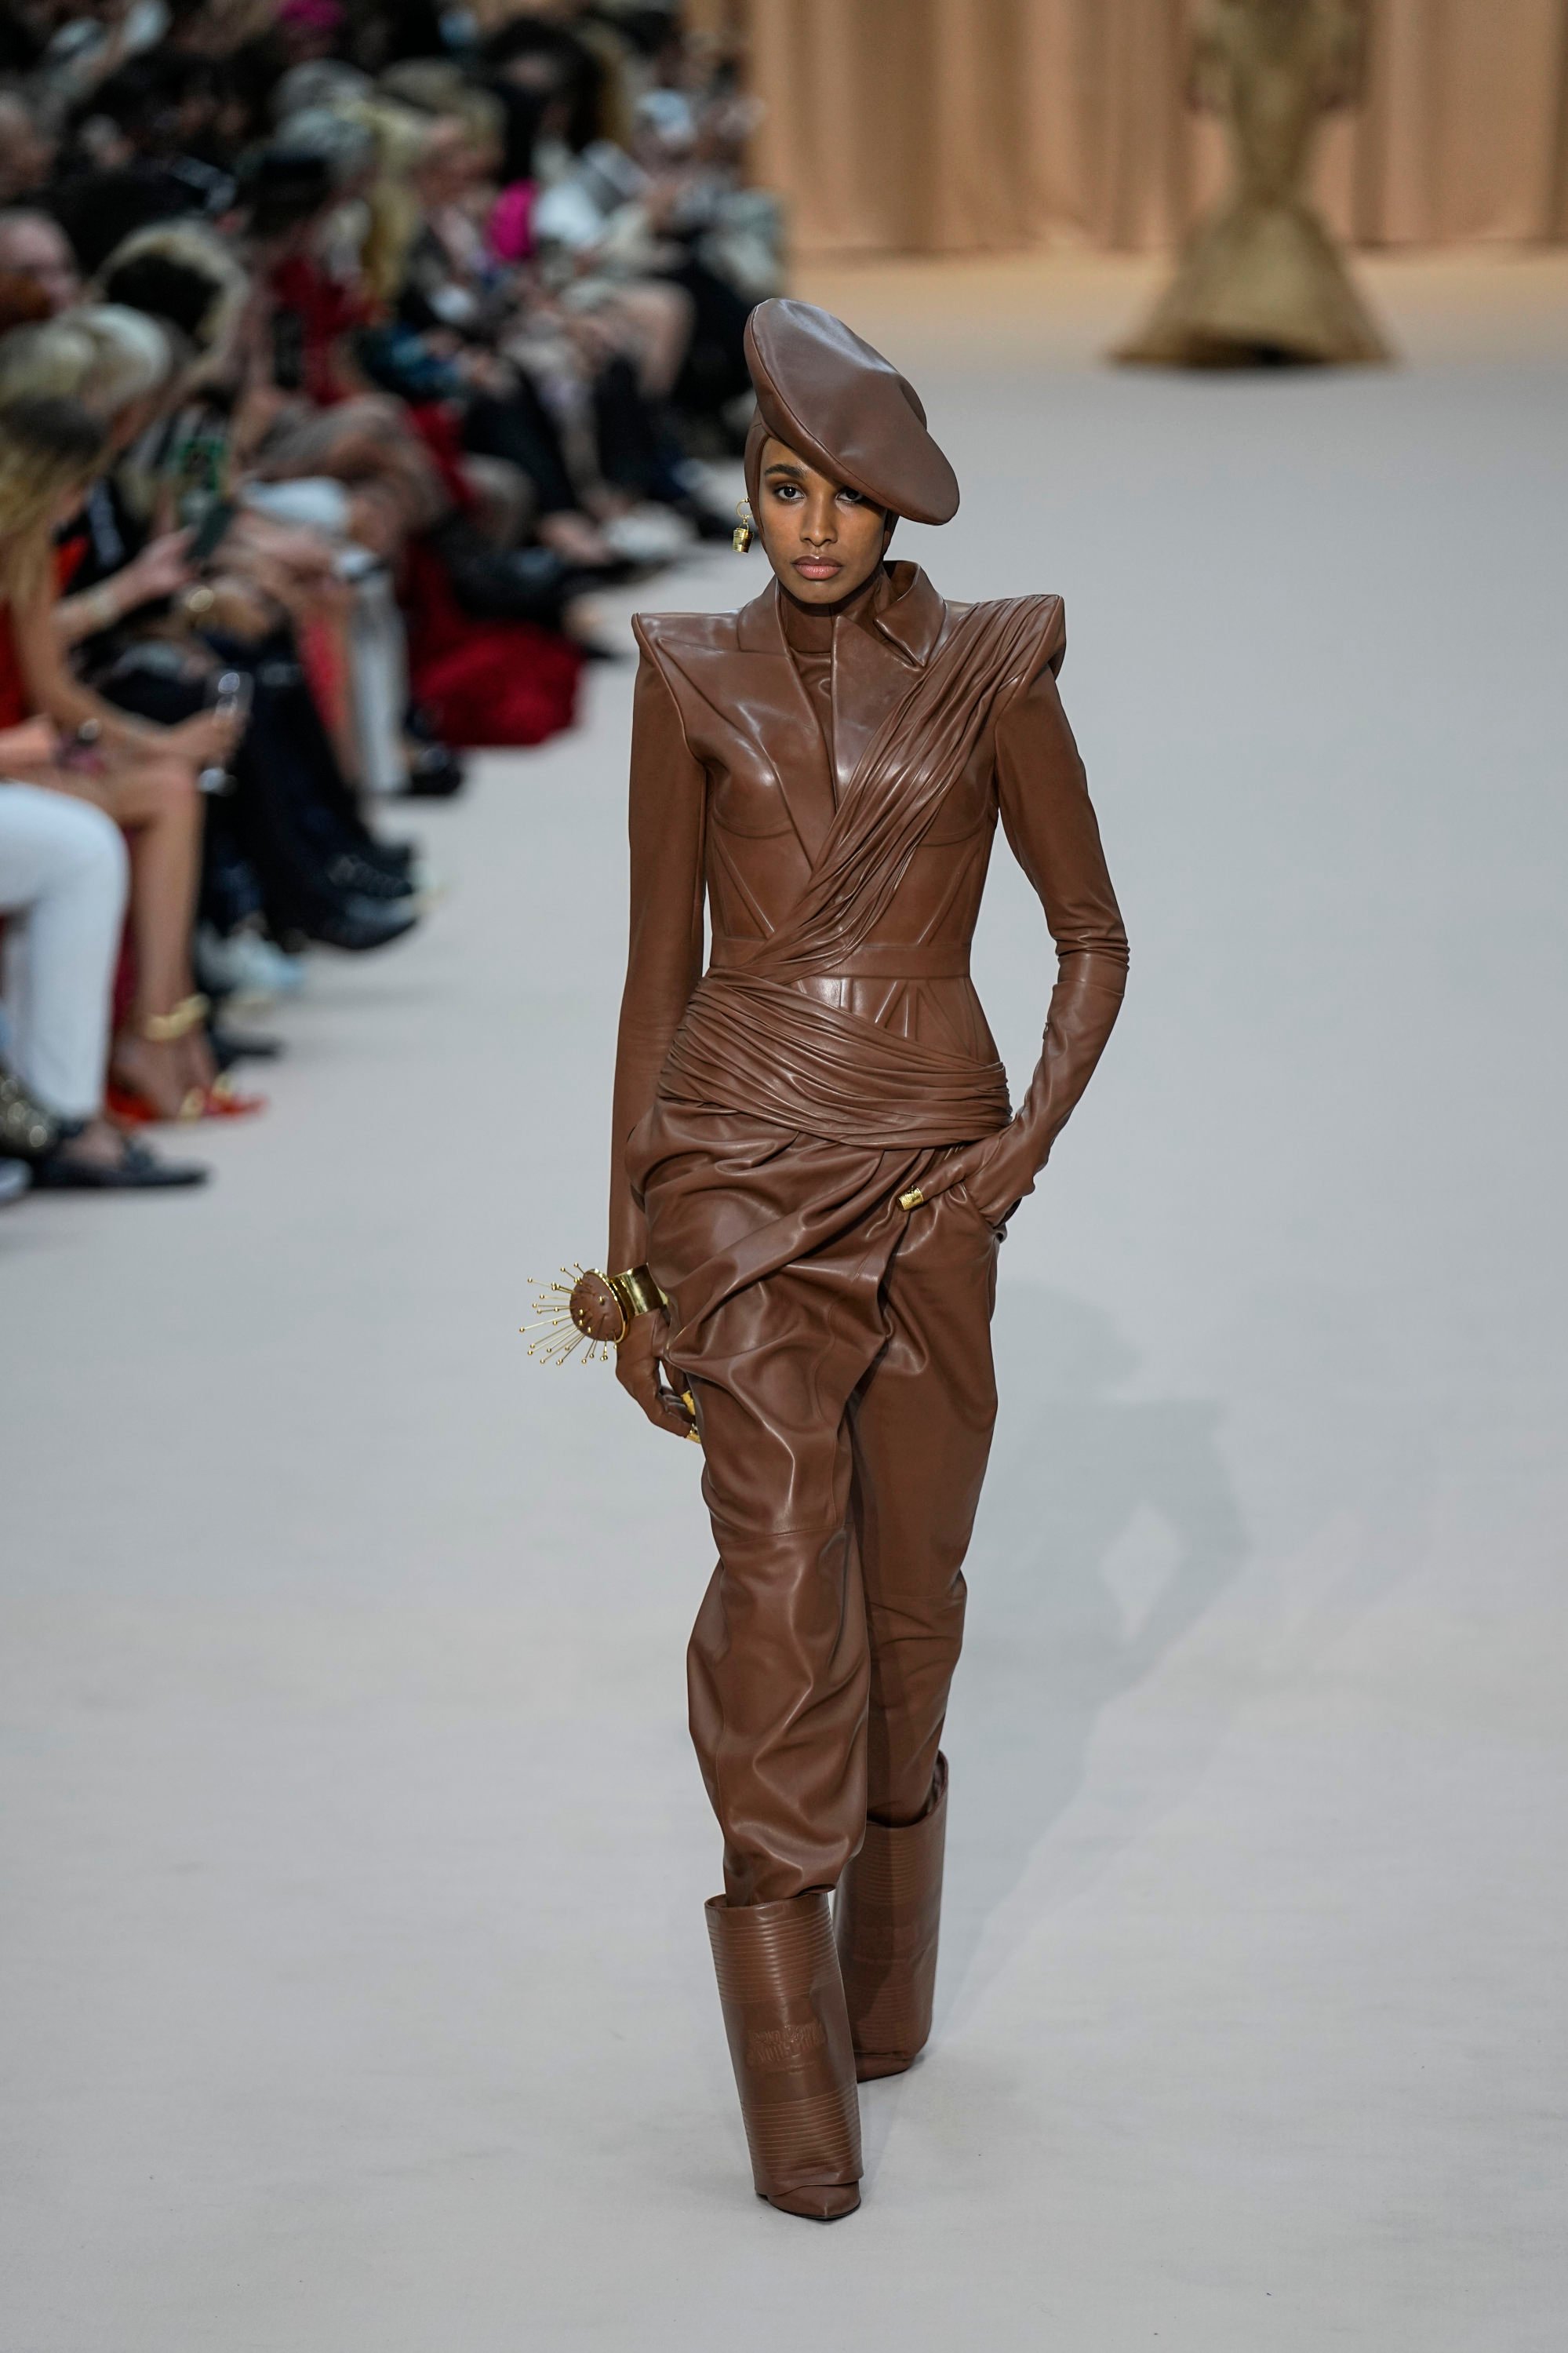 Bella Hadid Brings Her Trophy Vintage To Paris Fashion Week